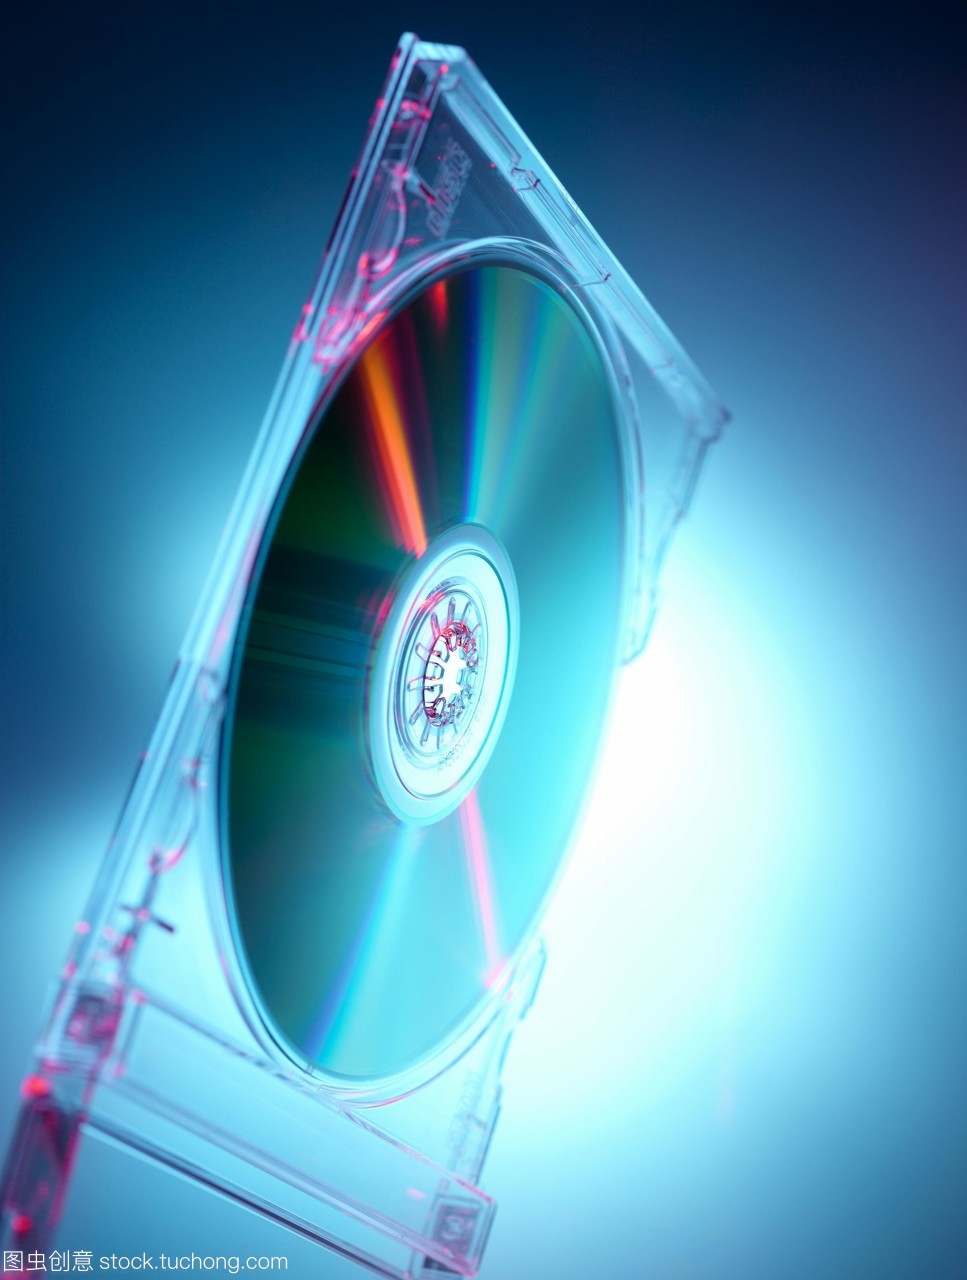 光盘cd在它的情况下。cd数字存储音乐和其他数据,作为微小的凹陷,涂上一层金属薄膜。这些信息被激光从大萧条中反射回来,使原始数据得以重建。阀瓣的外塑料层防止灰尘和划痕损坏。